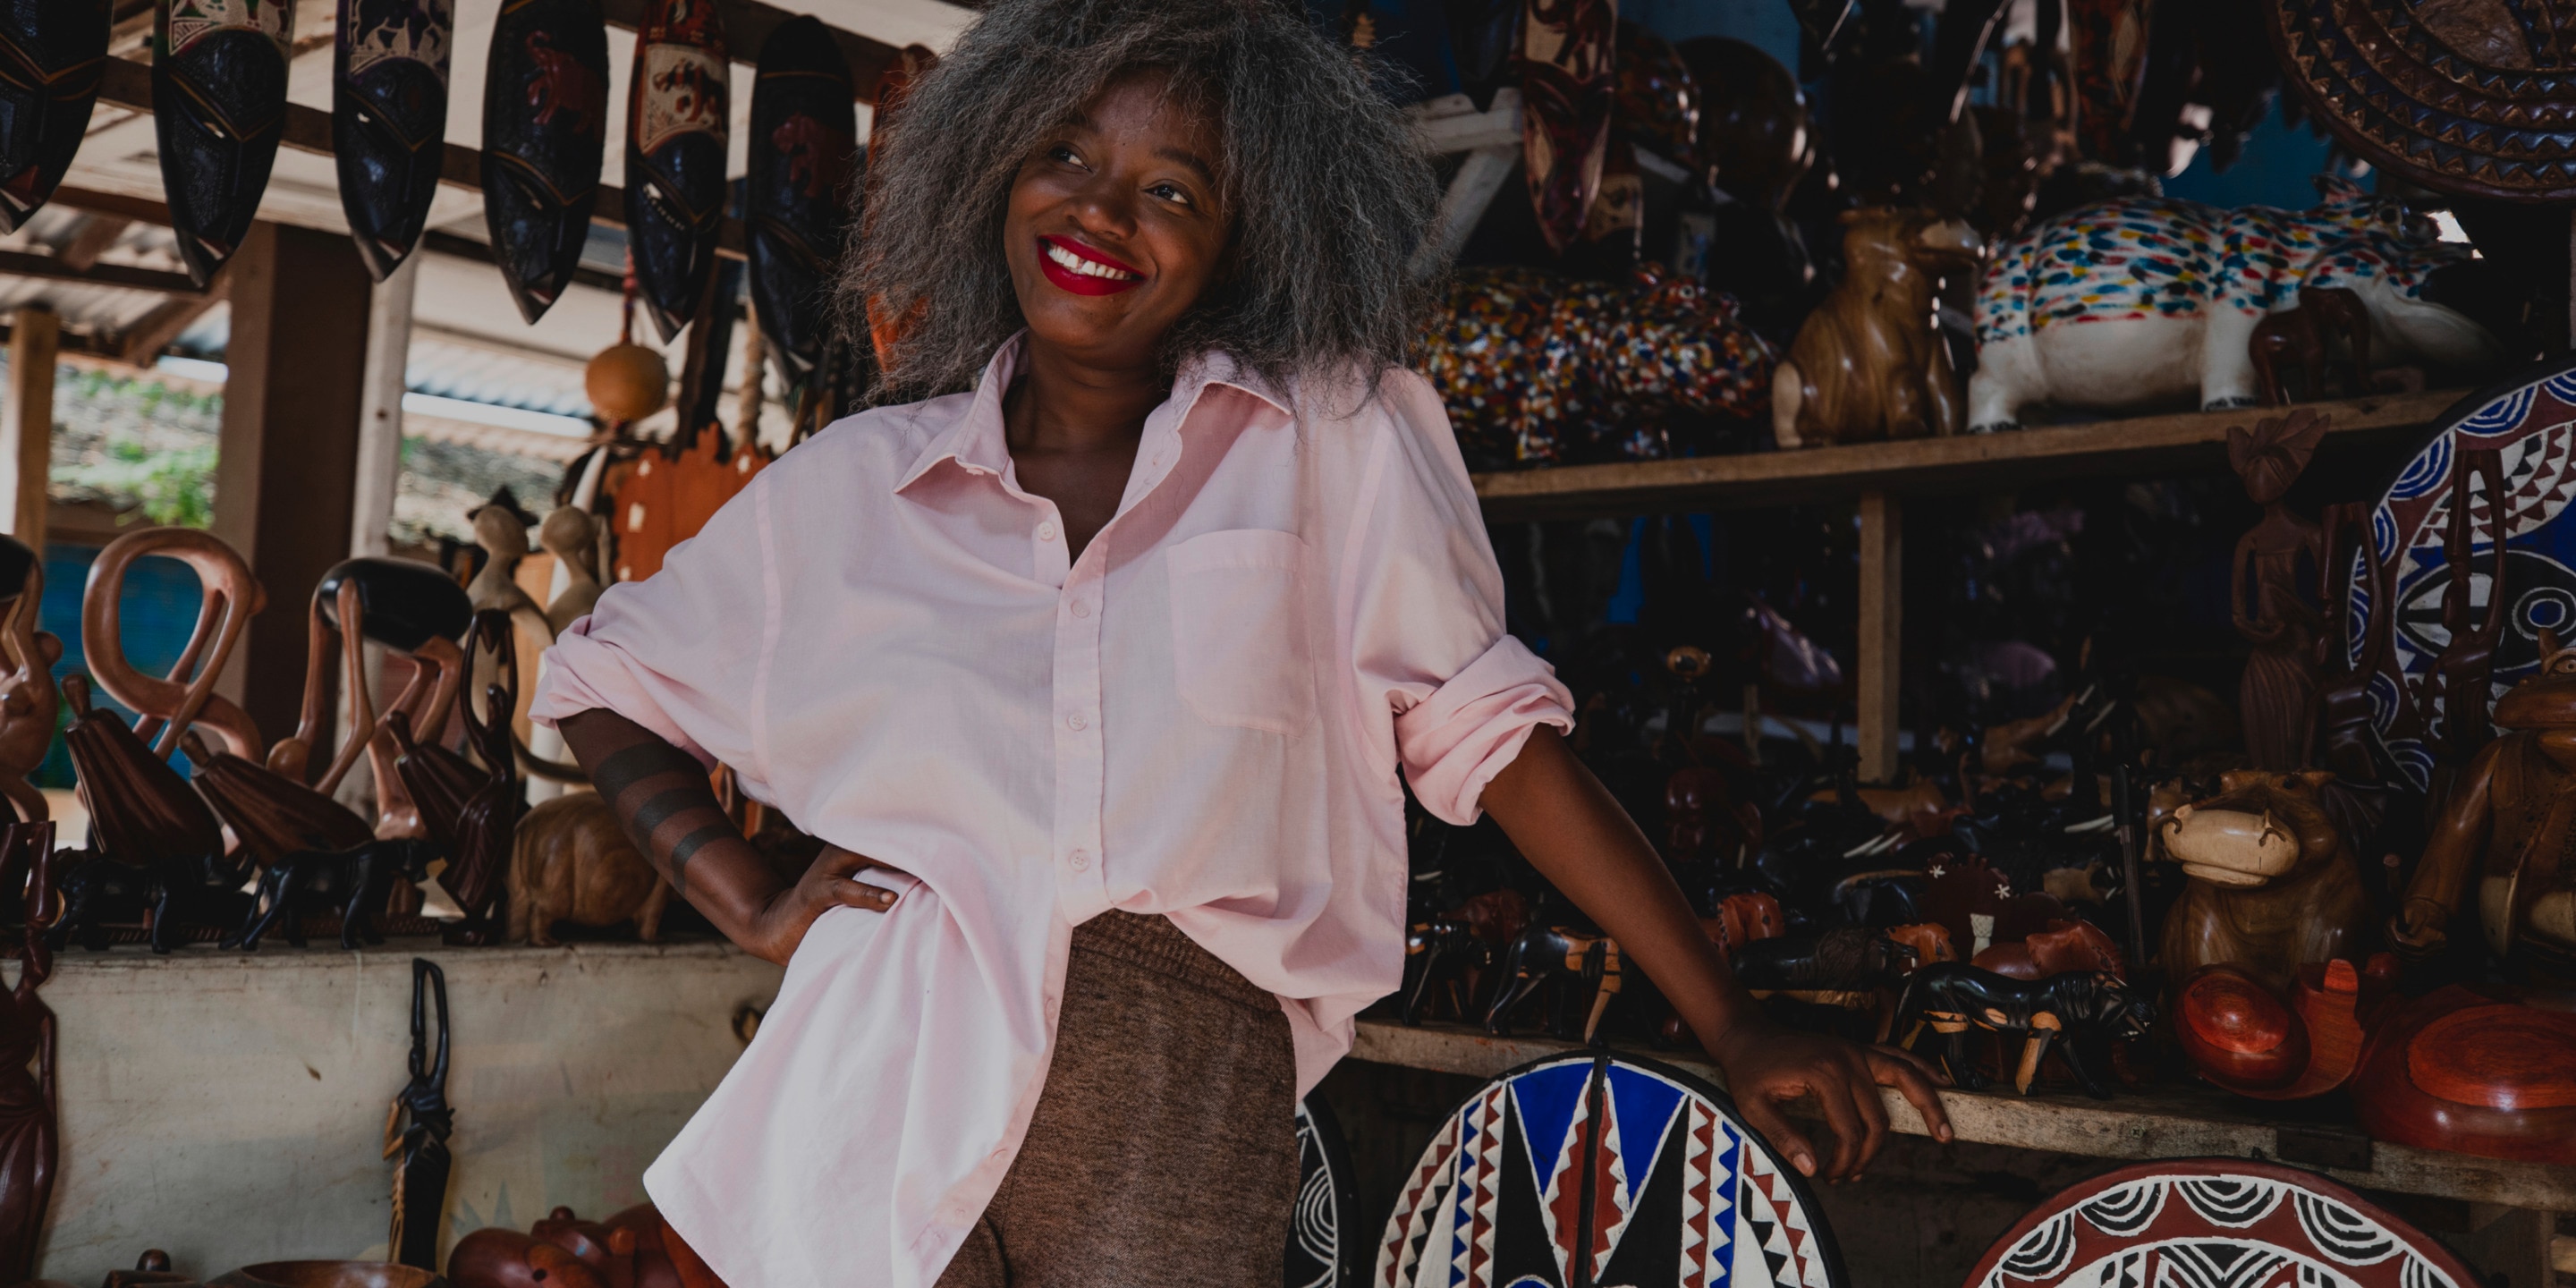 La stilista Rebecca Zoro all'interno di un negozio di souvenir africano in una comunità di coltivazione del cacao ivoriana